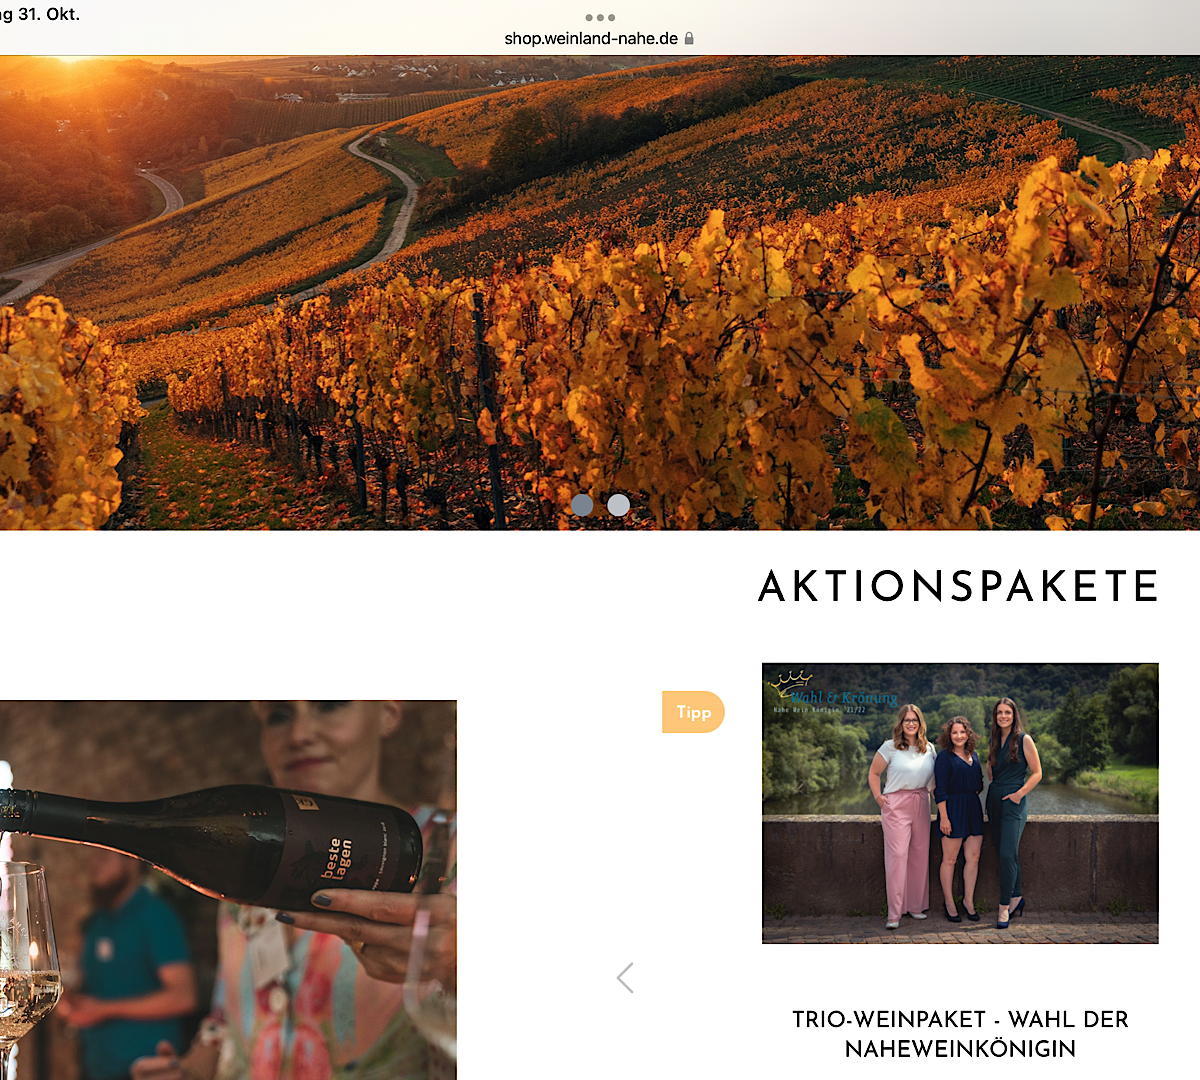 Mit dem Trio-Weinpaket der Wahl der Nahe-Weinkönigin online beiwohnen